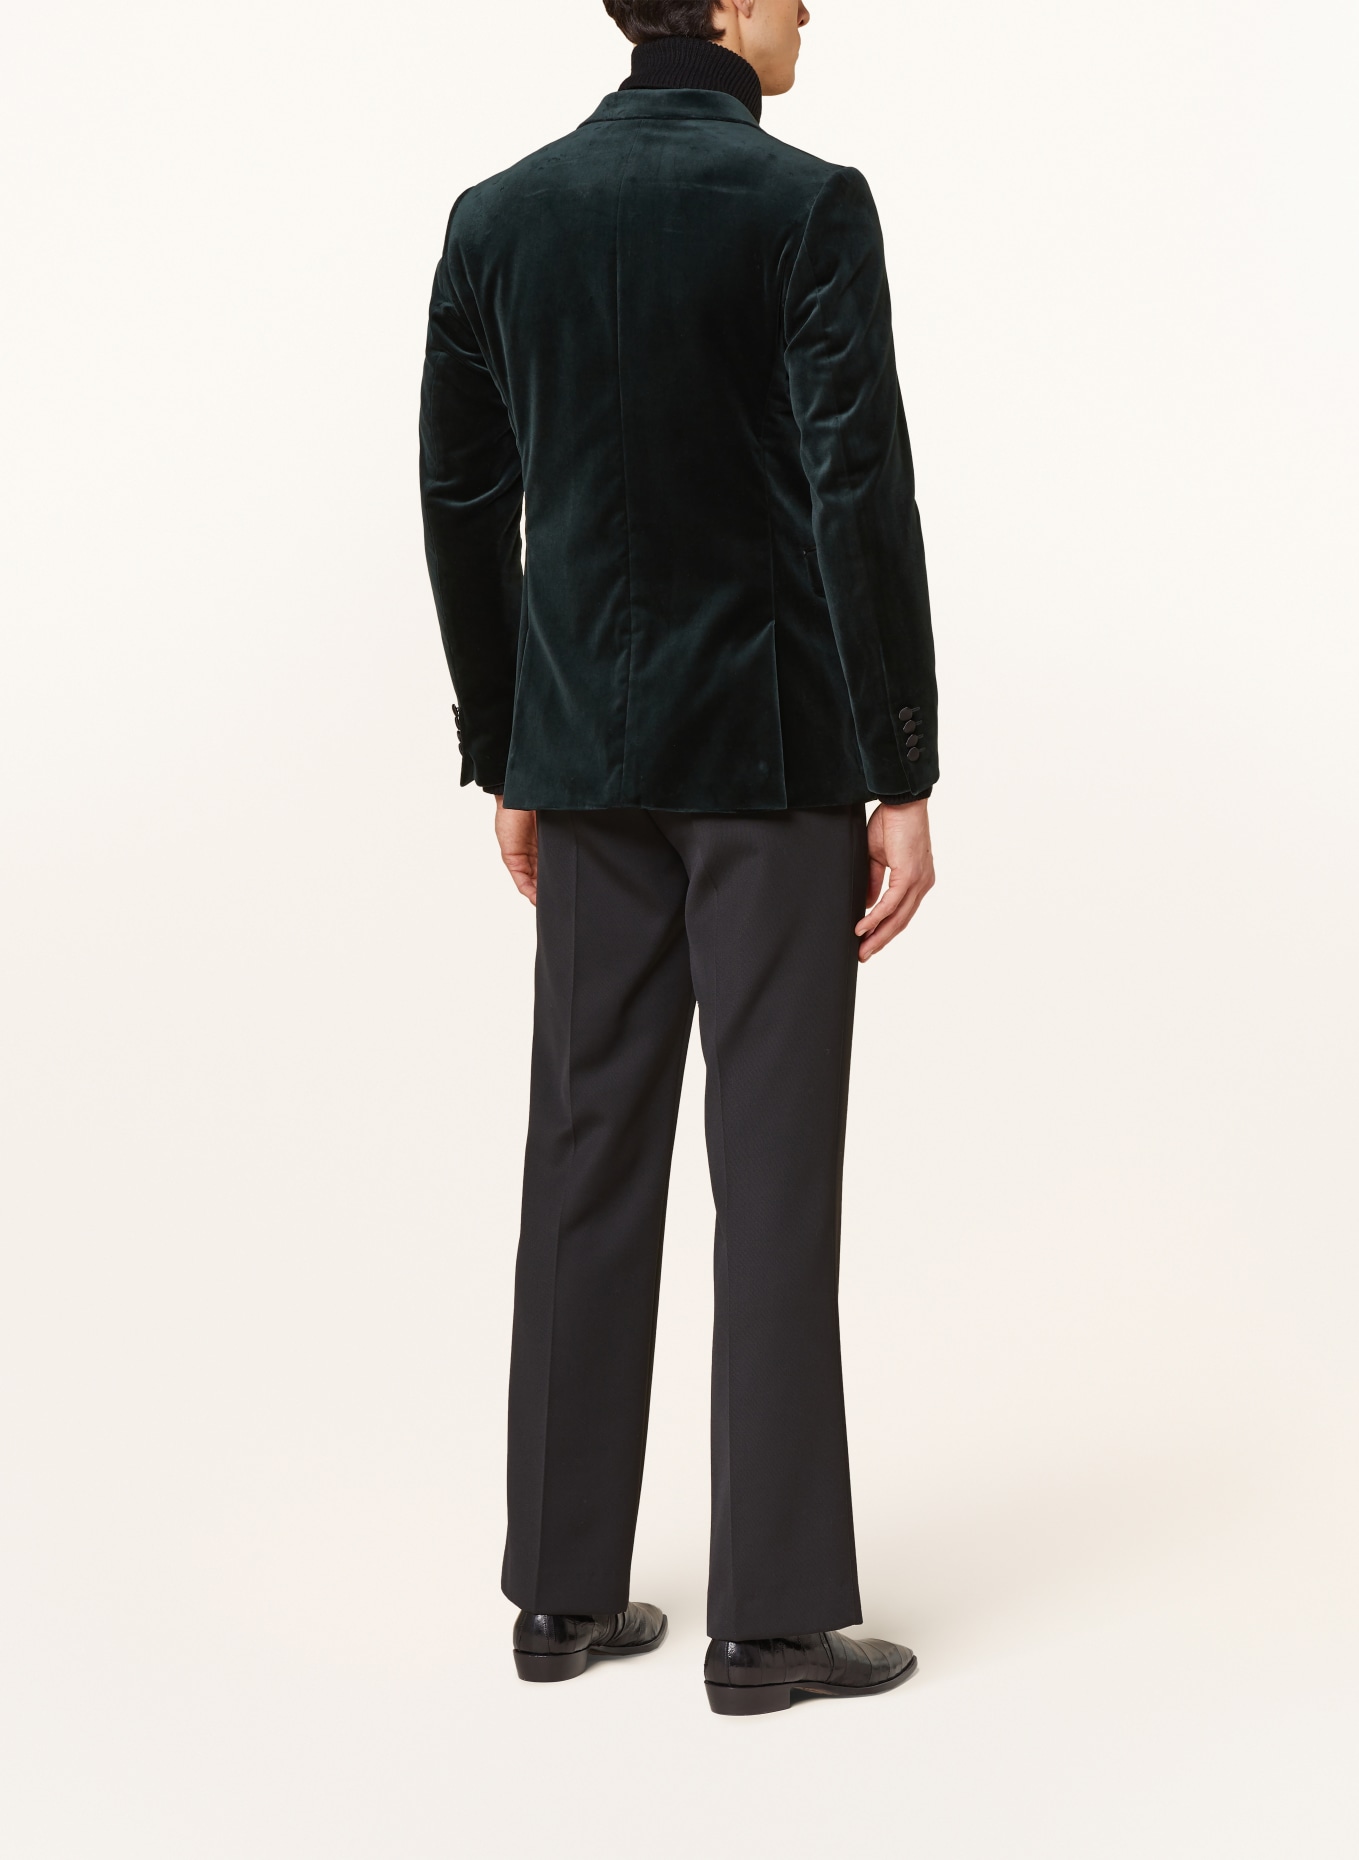 TIGER OF SWEDEN Smoking tailored jacket JEFFERS regular fit made of velvet, Color: DARK GREEN/ BLACK (Image 3)